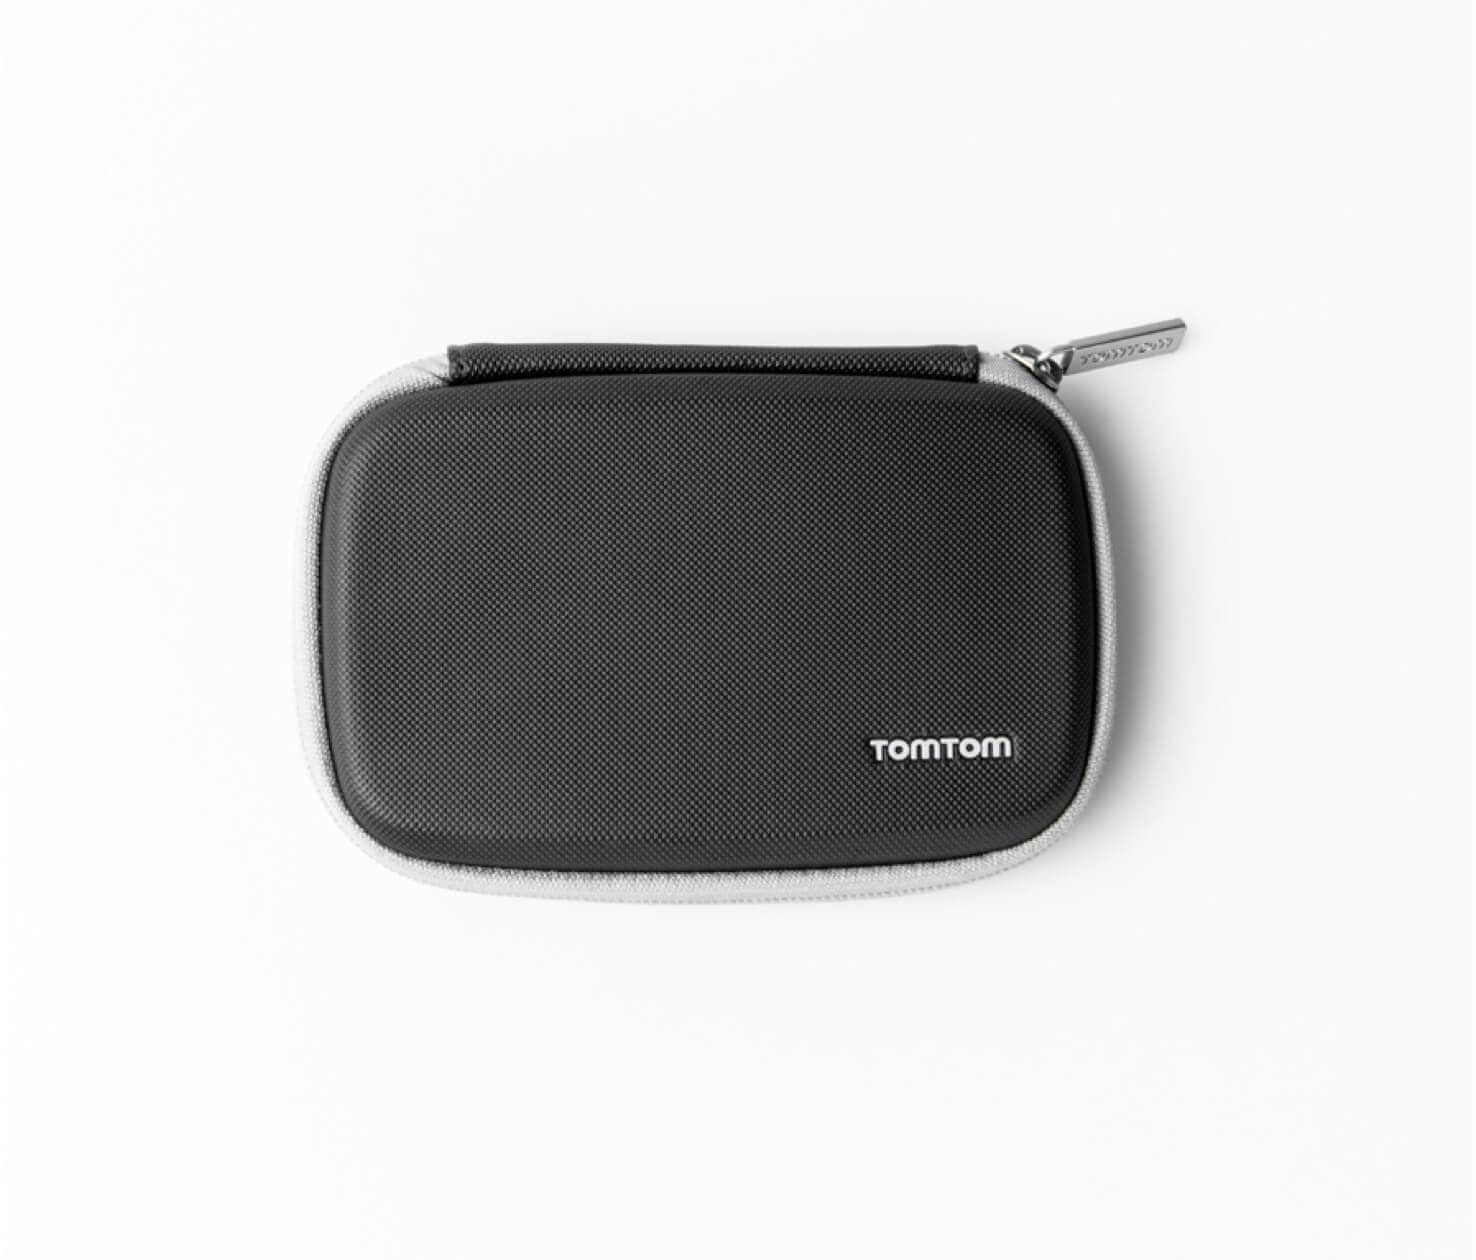 TT330CS Custom Leather Case for TomTom XL 320 330 335 340 GPS 